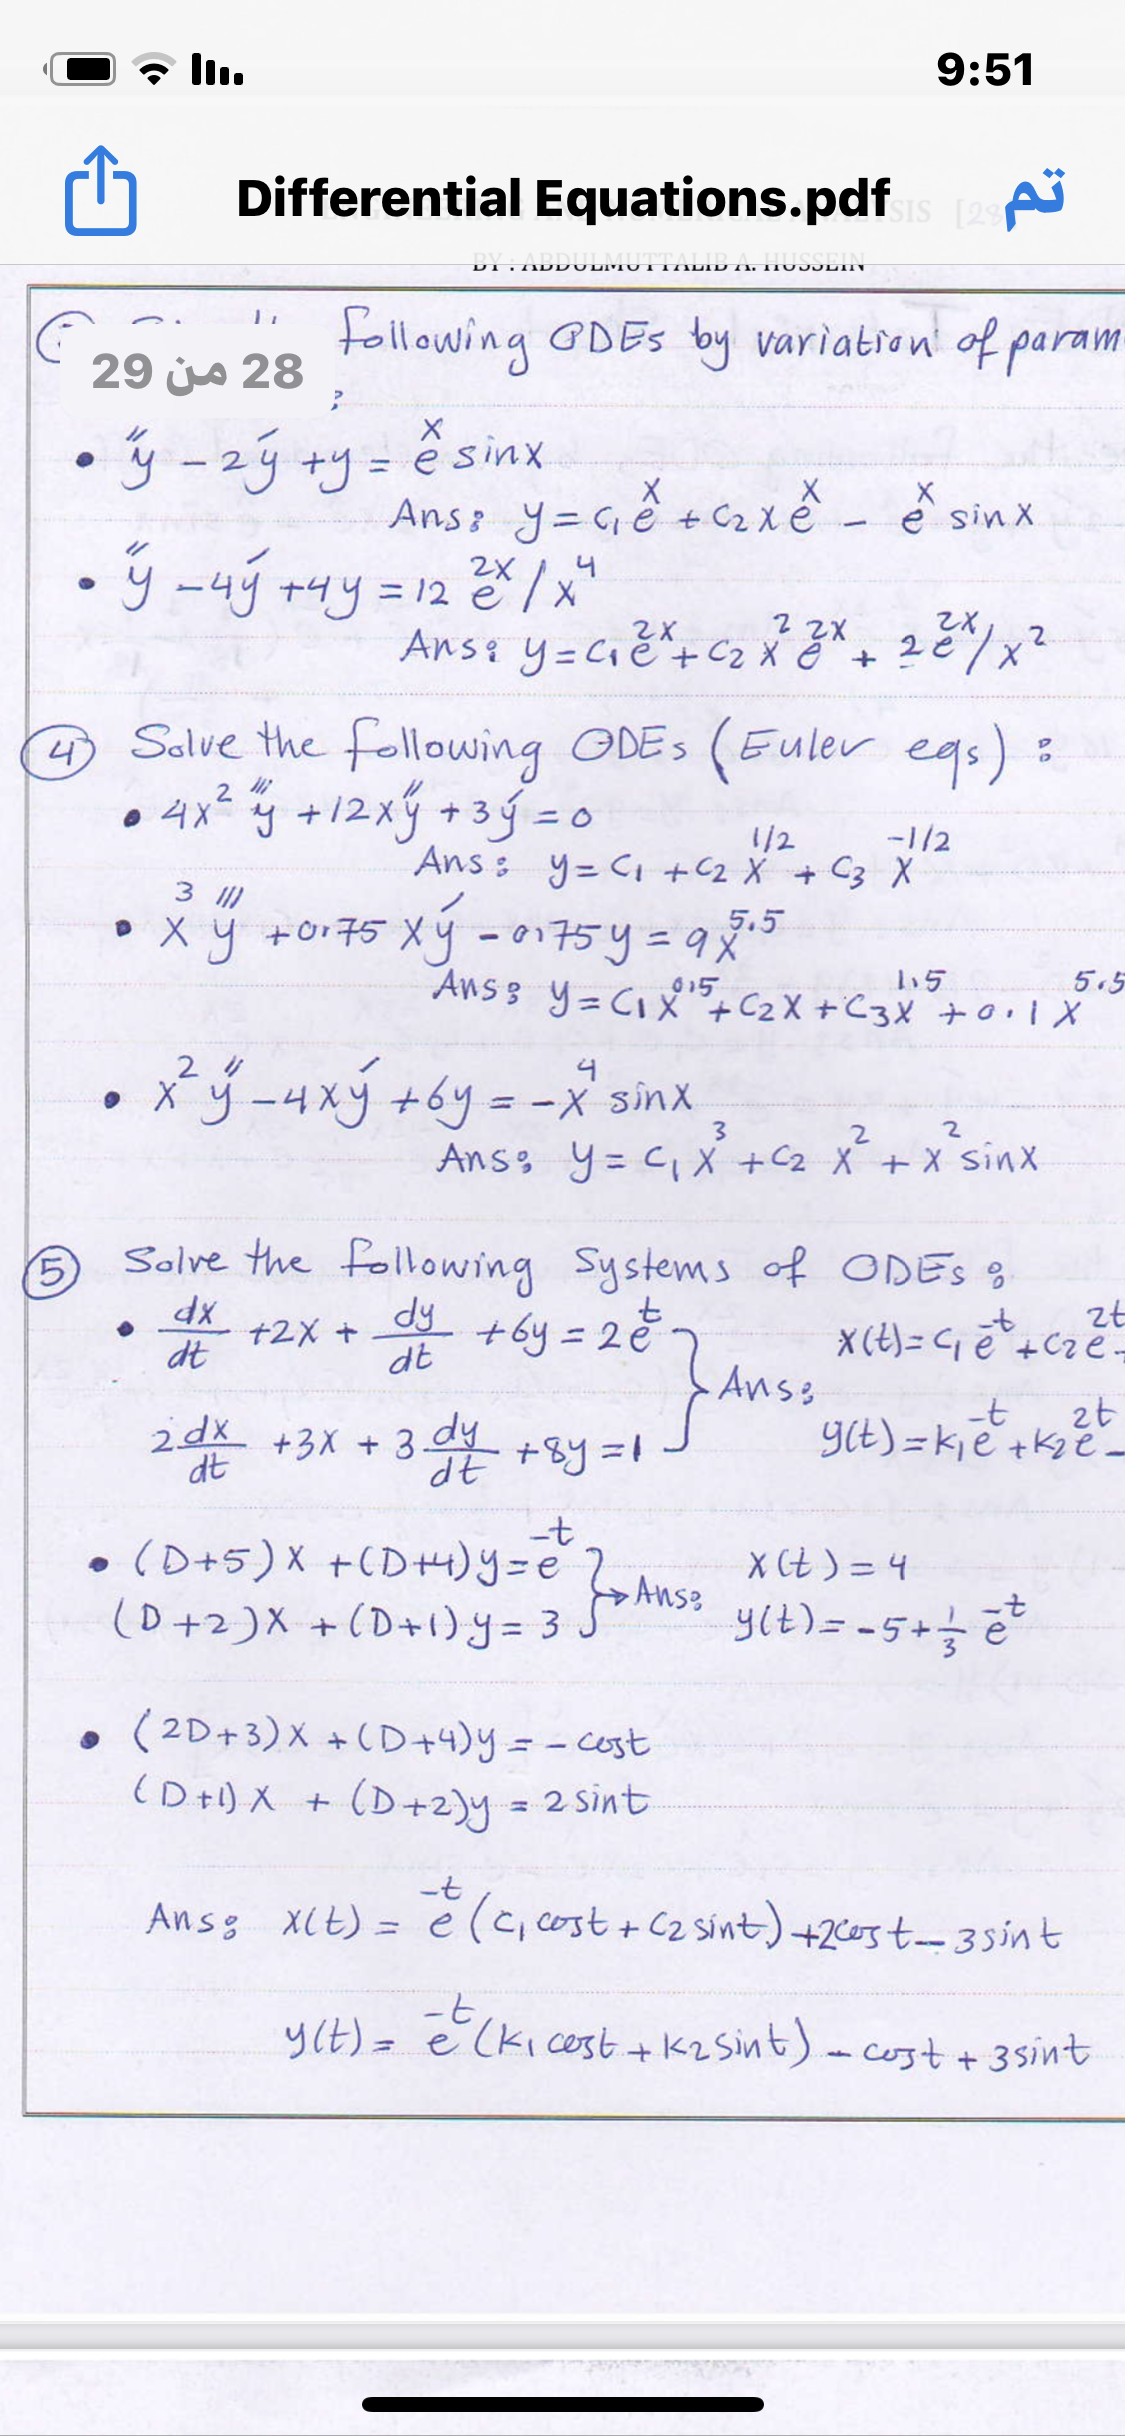 ll.
9:51
Differential Equations.pdf
ISIS [29
TIDDU LITU I TILID TI. IT 03JLIIT
following GDES by variatron of param
29 js 28
• ý -2ý +y= ê sinx
Ans: y=Gě +C2 xě - ě sinx
• ý -4ý +4y
2X
= 12 e
4
Ans: y=Cié+ Cz X ĕ " +
2e
4 Salve the following ODES (Euler egs):
• 4x² y +12xy+3ý =o
=D0
-1/2
Ans : y= Ci +C2 X + C3 X
1/2
3 I)
• x y +or75 Xý - 0175y=9%
5.5
%3D
5.5
Ans 3 y= CIX"+C2X +C3X +0.1X
015
-4xy +6y=-x
4
sinX
3.
2.
2
Anss y= C, X +C2 X +X sinx
5
Solve the following Systems of ODES S
dy
+by =20-
Anss
zt
X (t) = C e +Cze=
+2X +
dt
dt
-t
zt
2dx
+3X + 3. +8y=1
dt
dy
YCE) = kie +k2e-
c0+5)X +CD+)Y =eAnse
(0+2)X +(D+1)y = 3 J
X Ct ) = 4
yit) = -5+e
(2D+3)X +CD+4)y= -cost
(D+1) X + (D+2)y
2 sint
Ansg X(t) = e
è (c, cost + C2 sint) +2c0st-35int
y(E)= e (kicest +K2 Sint)-cost + 3sint
